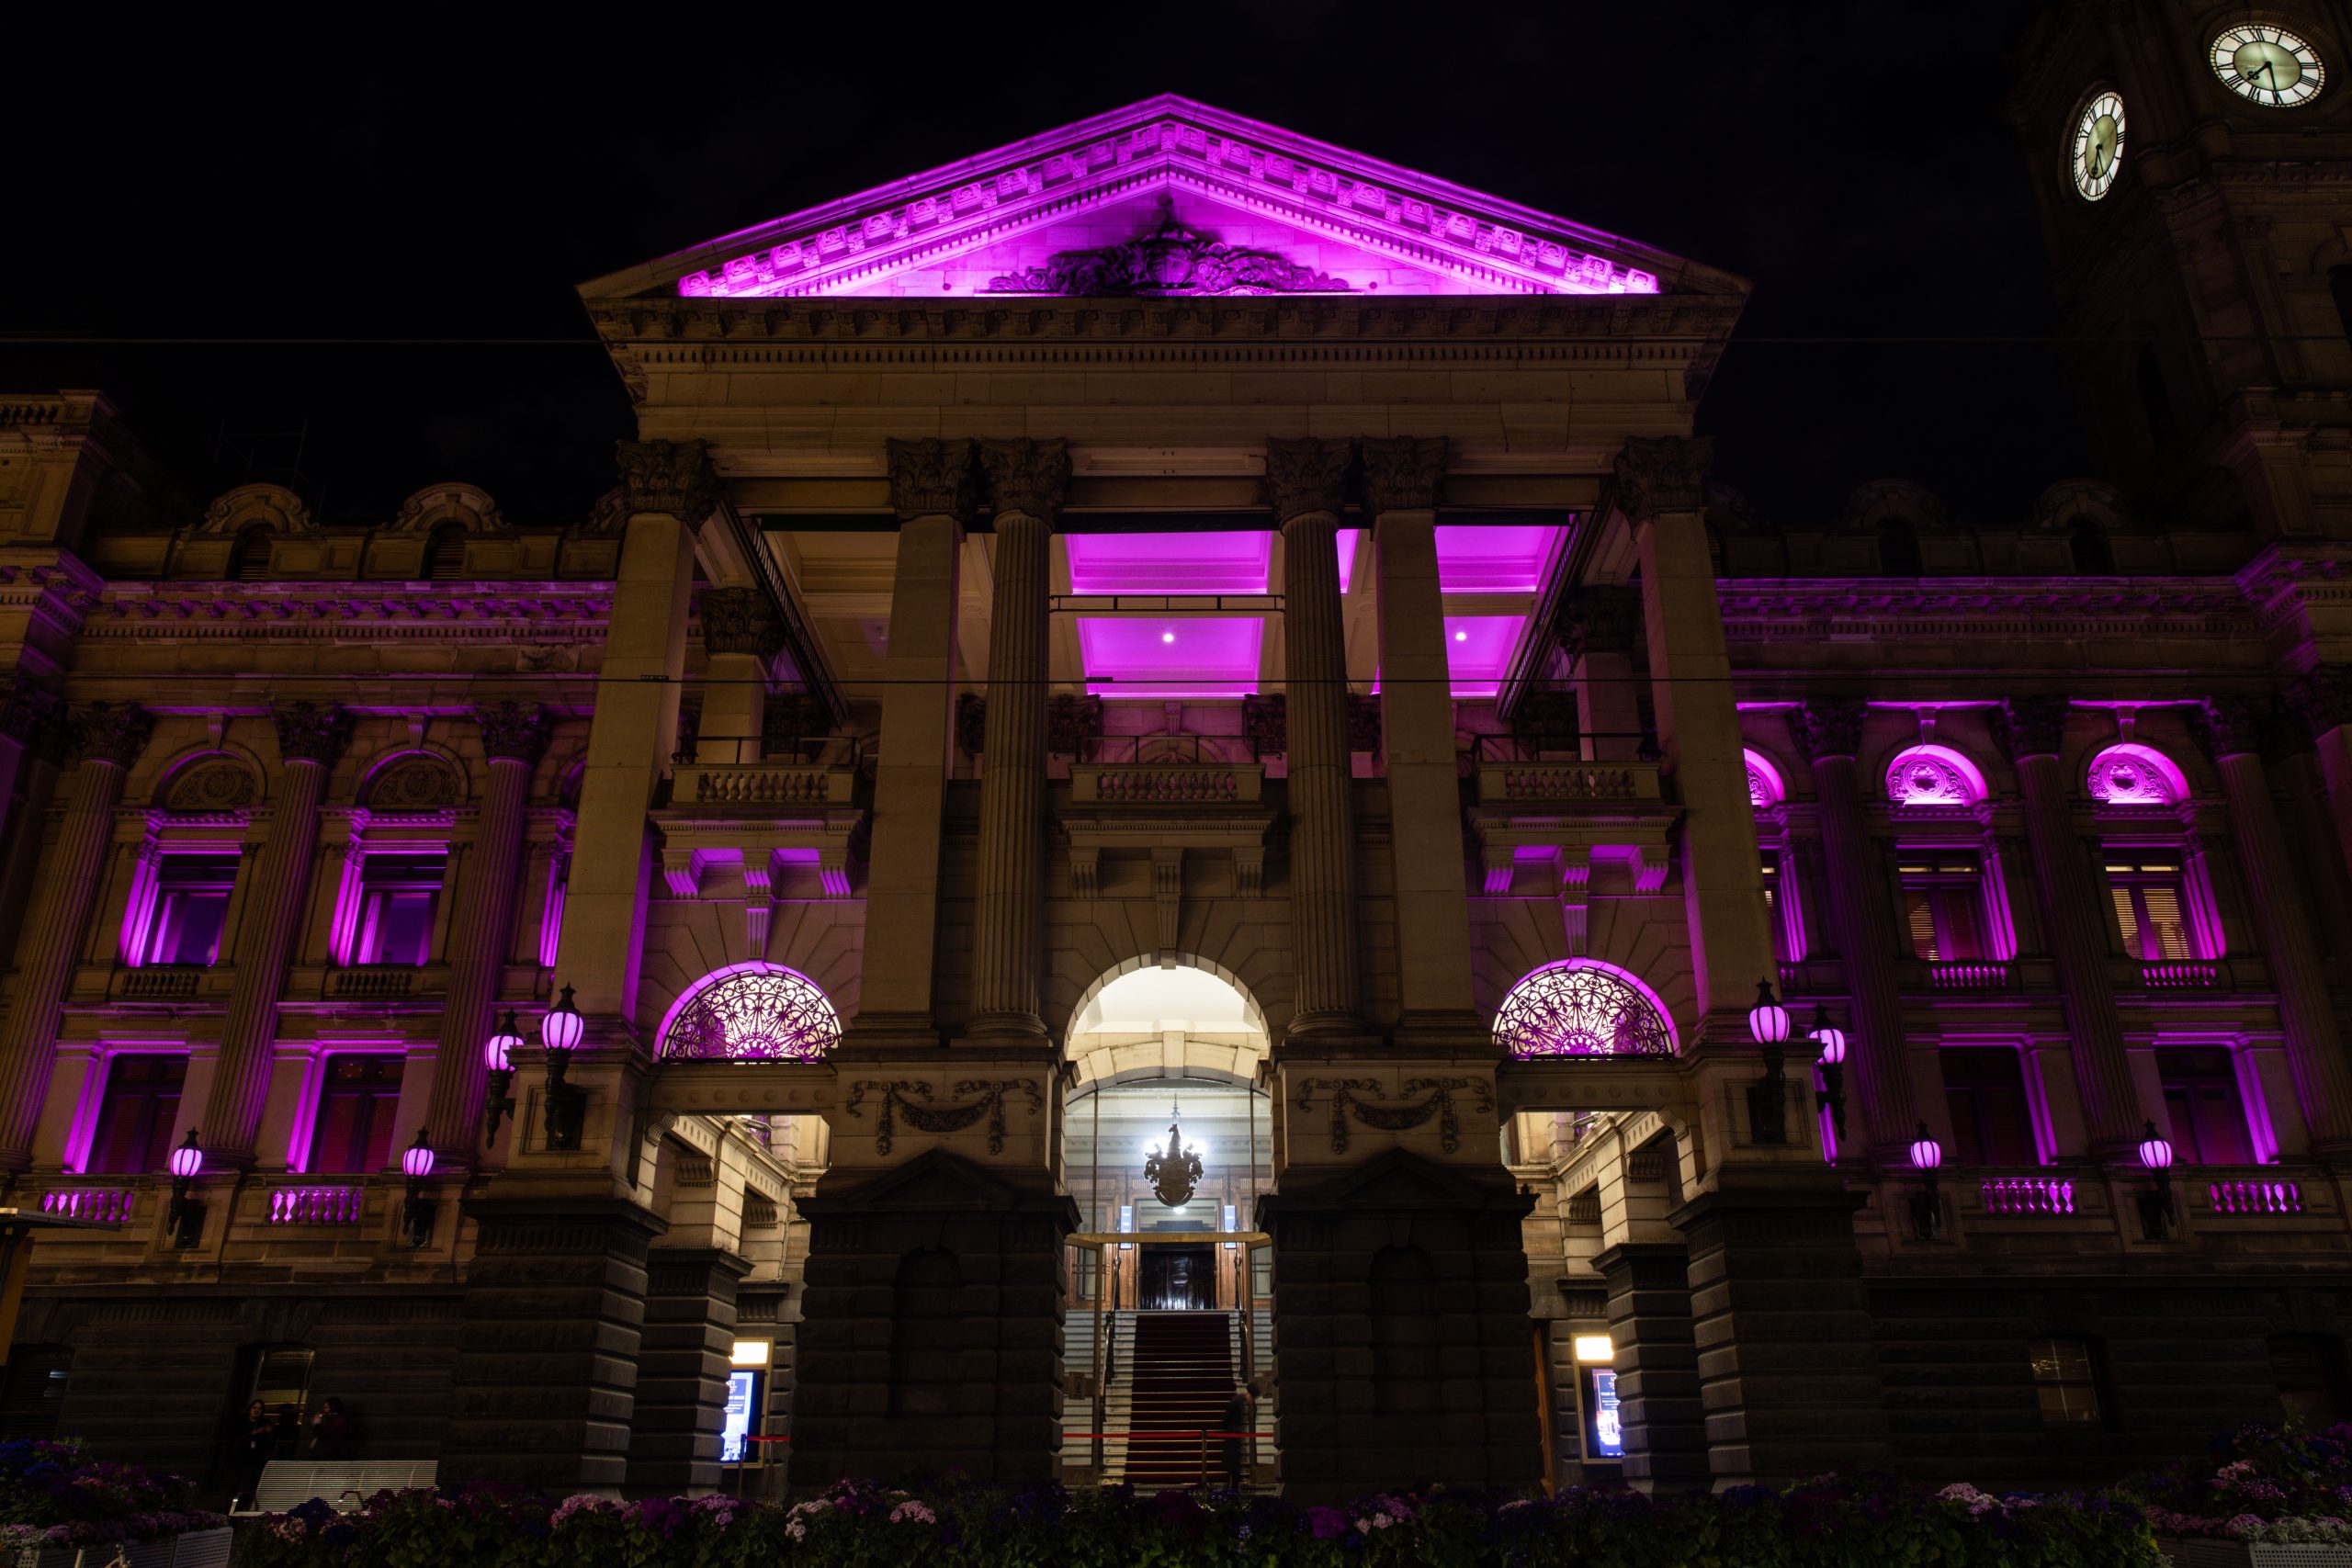  澳洲为奥莉维亚办国家追悼会 澳洲地标点亮粉红灯